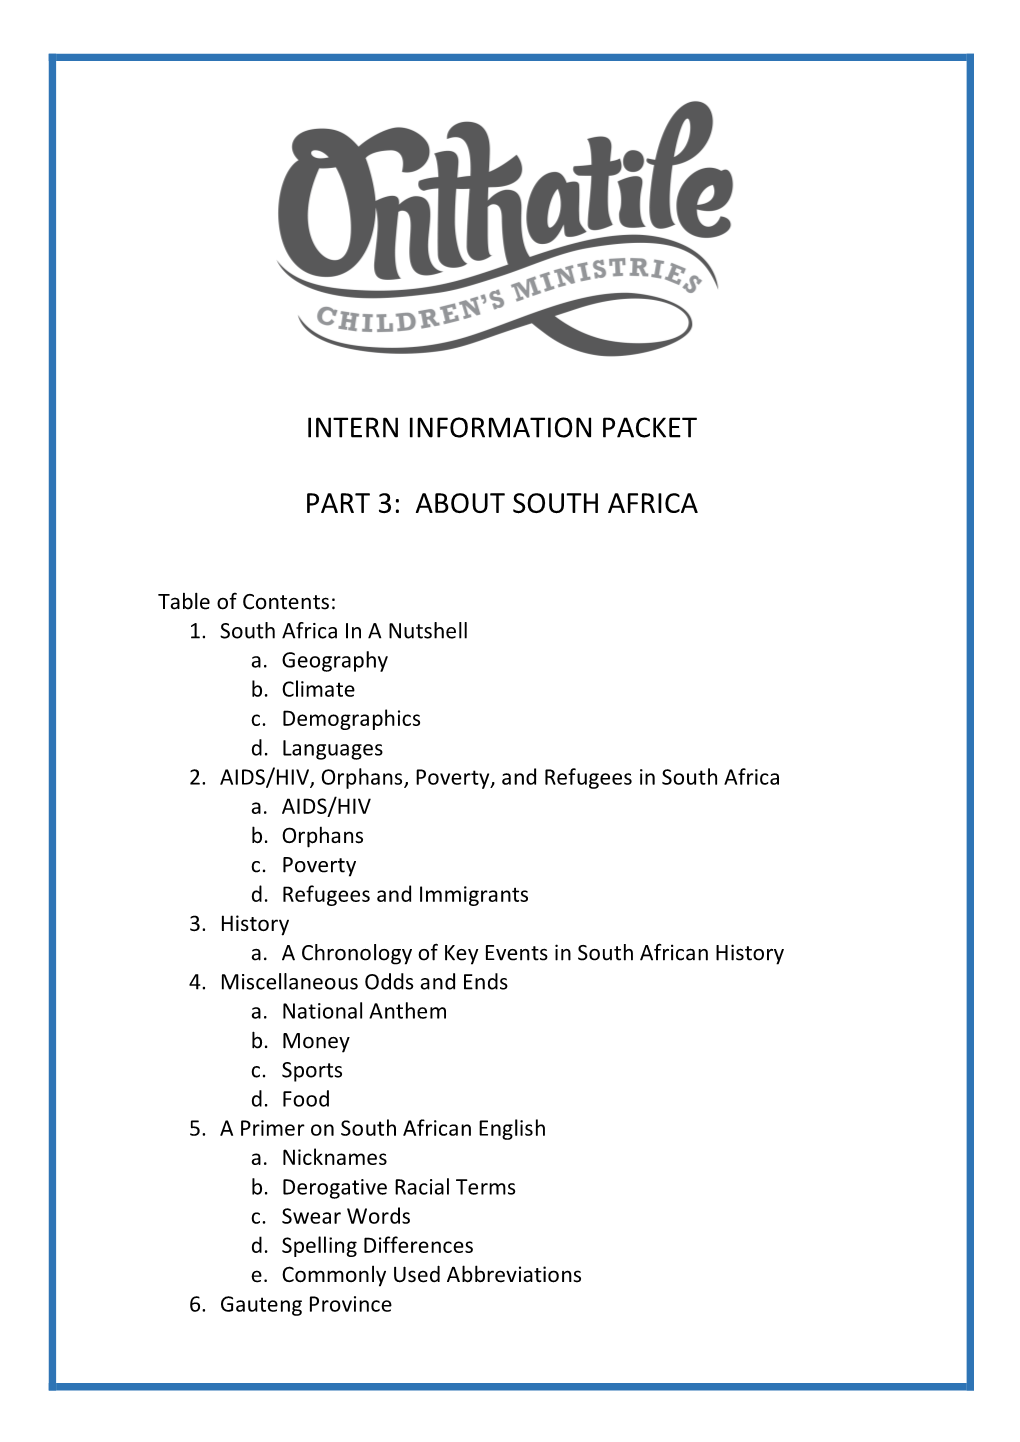 Intern Information Packet Part 3